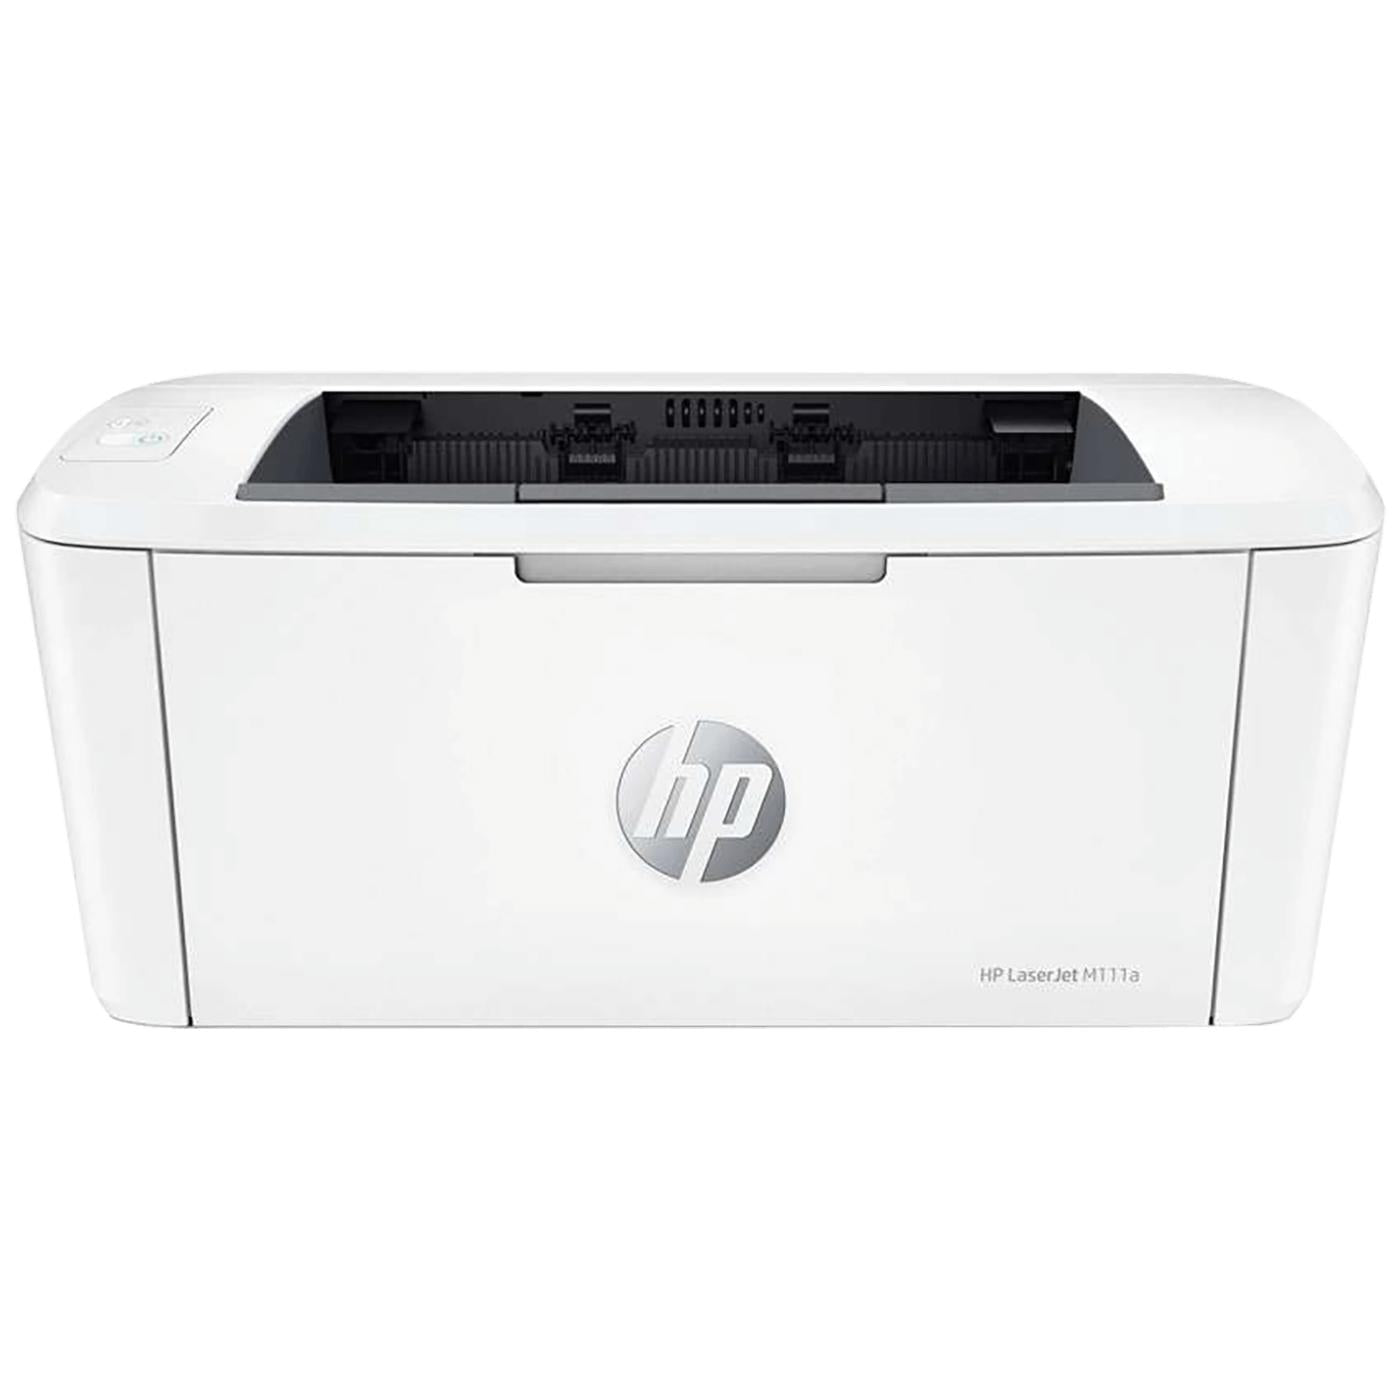 Printer HP LaserJet M111a M111a 7MD67A